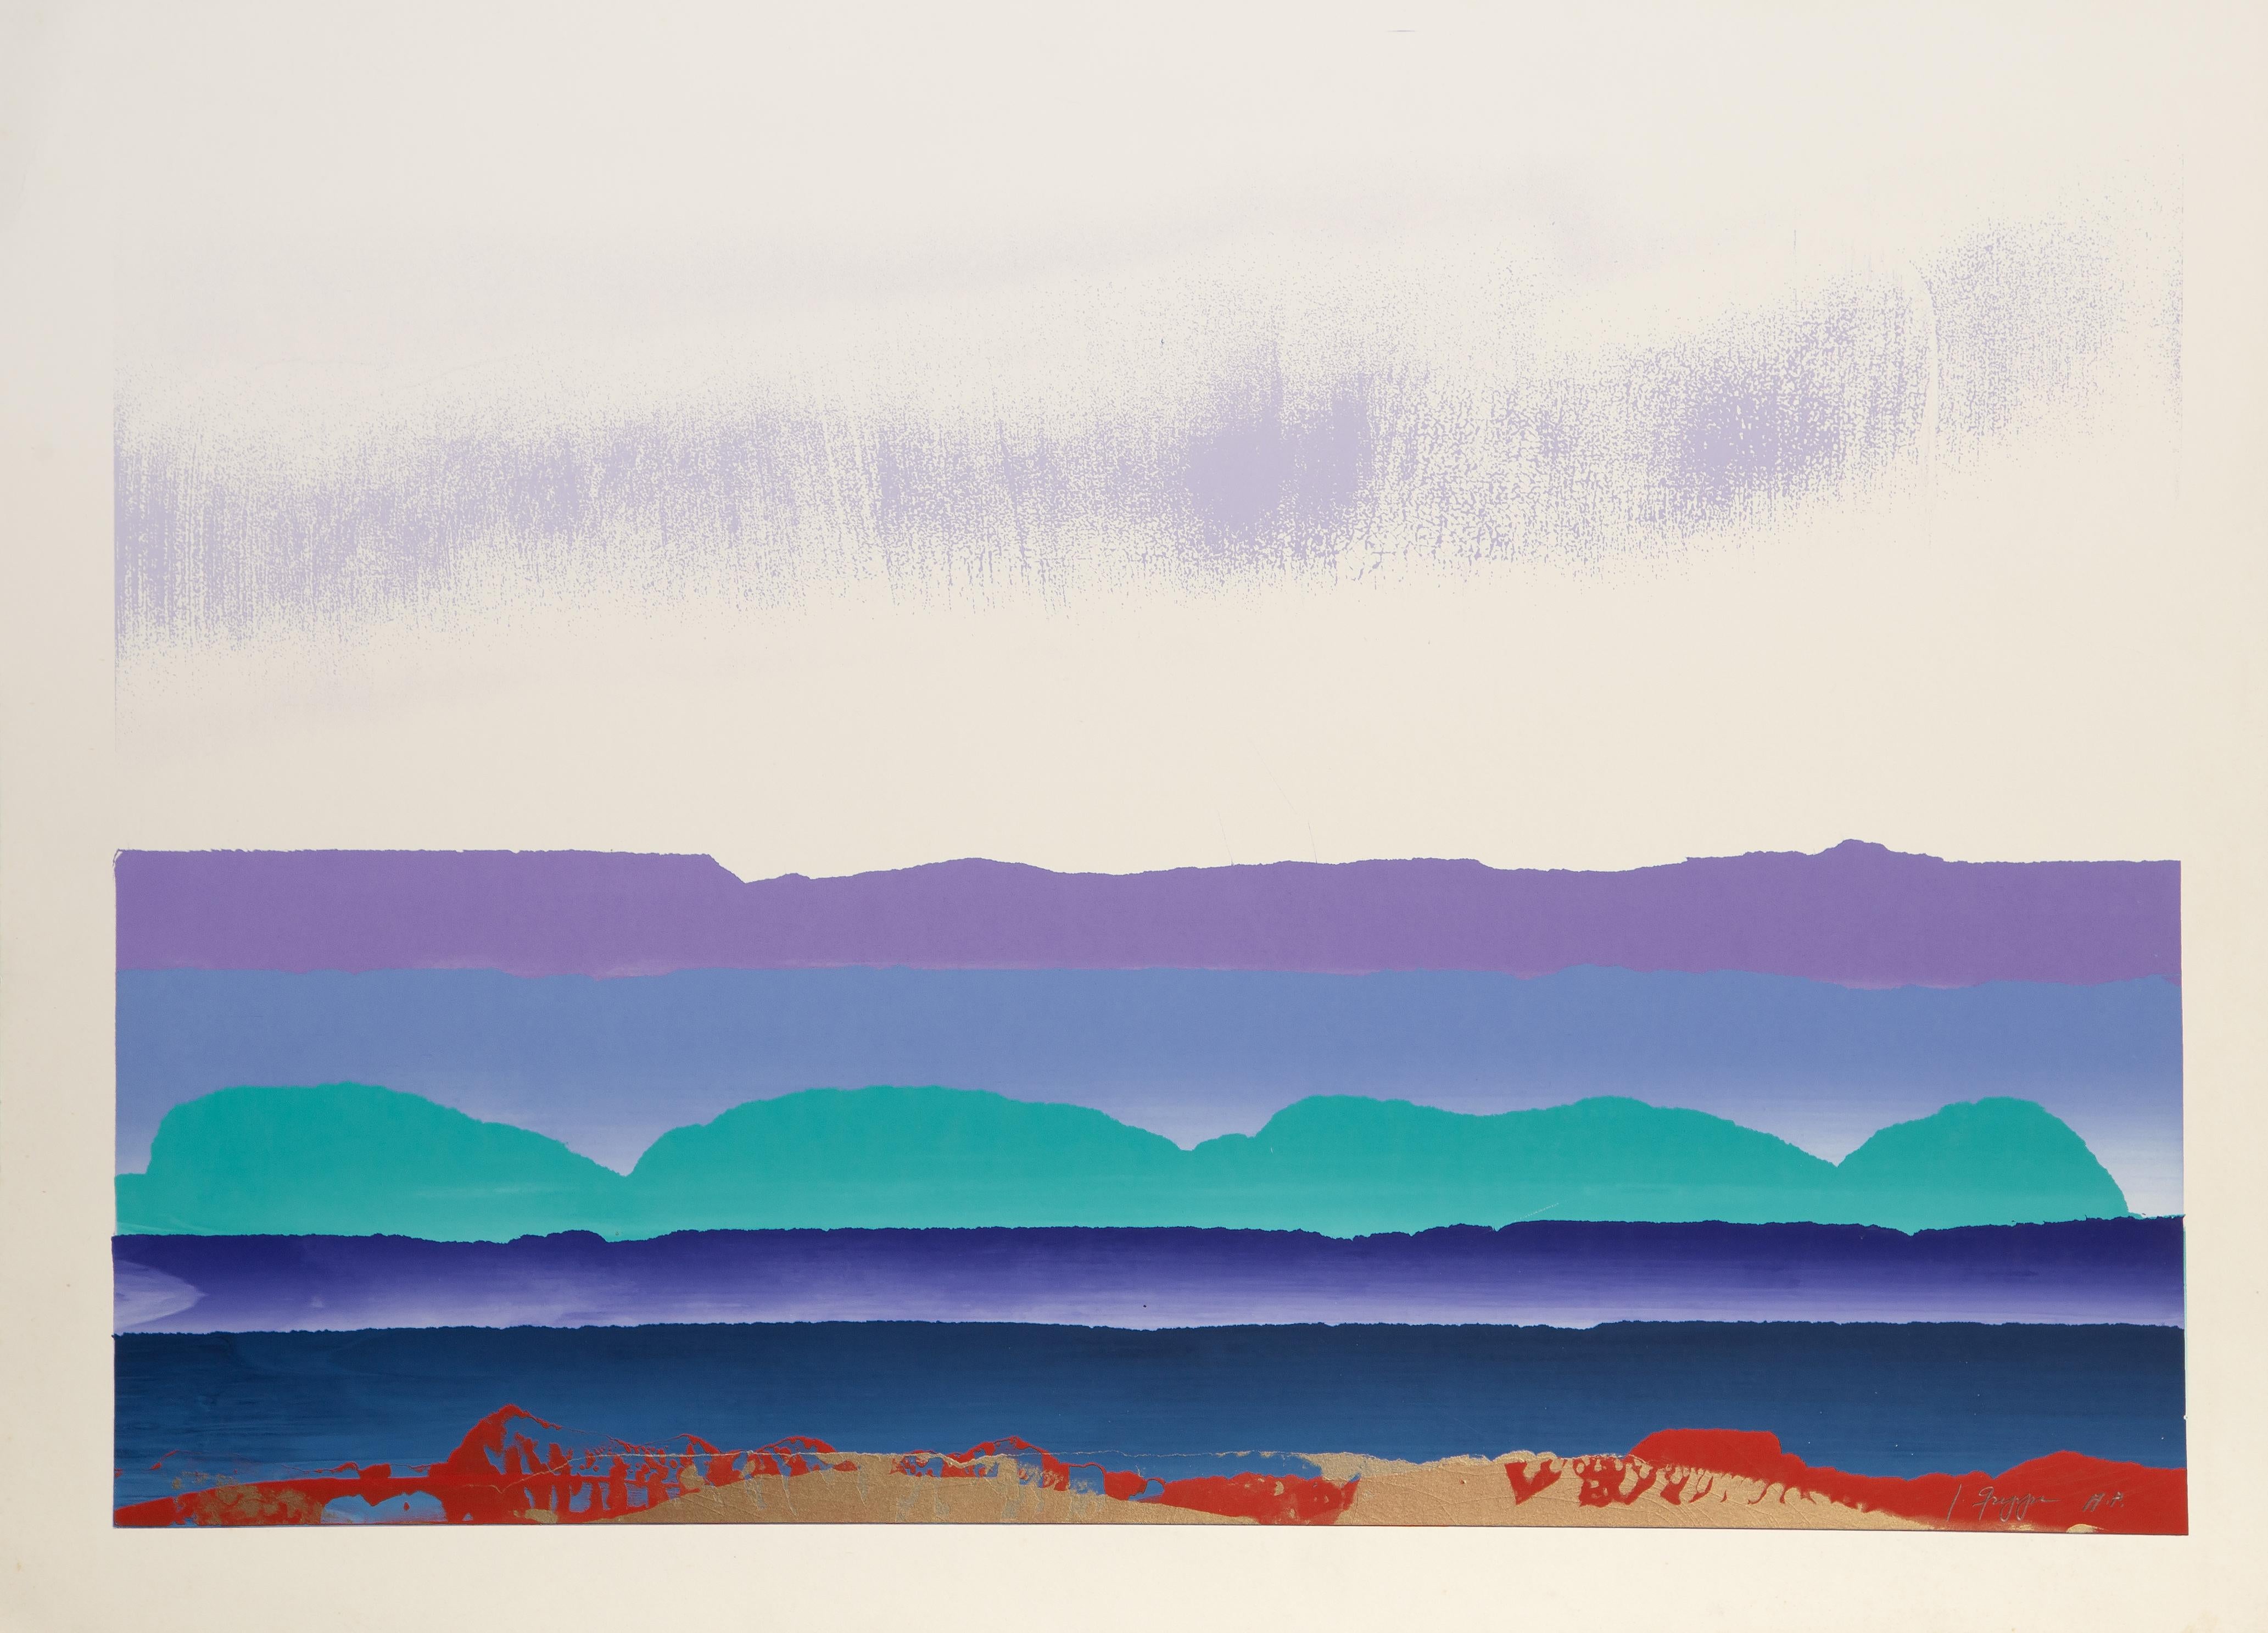 Paysage en violet, vert, bleu et rouge
Joseph Grippi, Américain (1924-2001)
Date : vers 1975
Sérigraphie, signée et numérotée au crayon.
Édition d'AP
Taille de l'image : 20.5 x 30 pouces
Taille : 24 x 33 in. (60.96 x 83.82 cm)